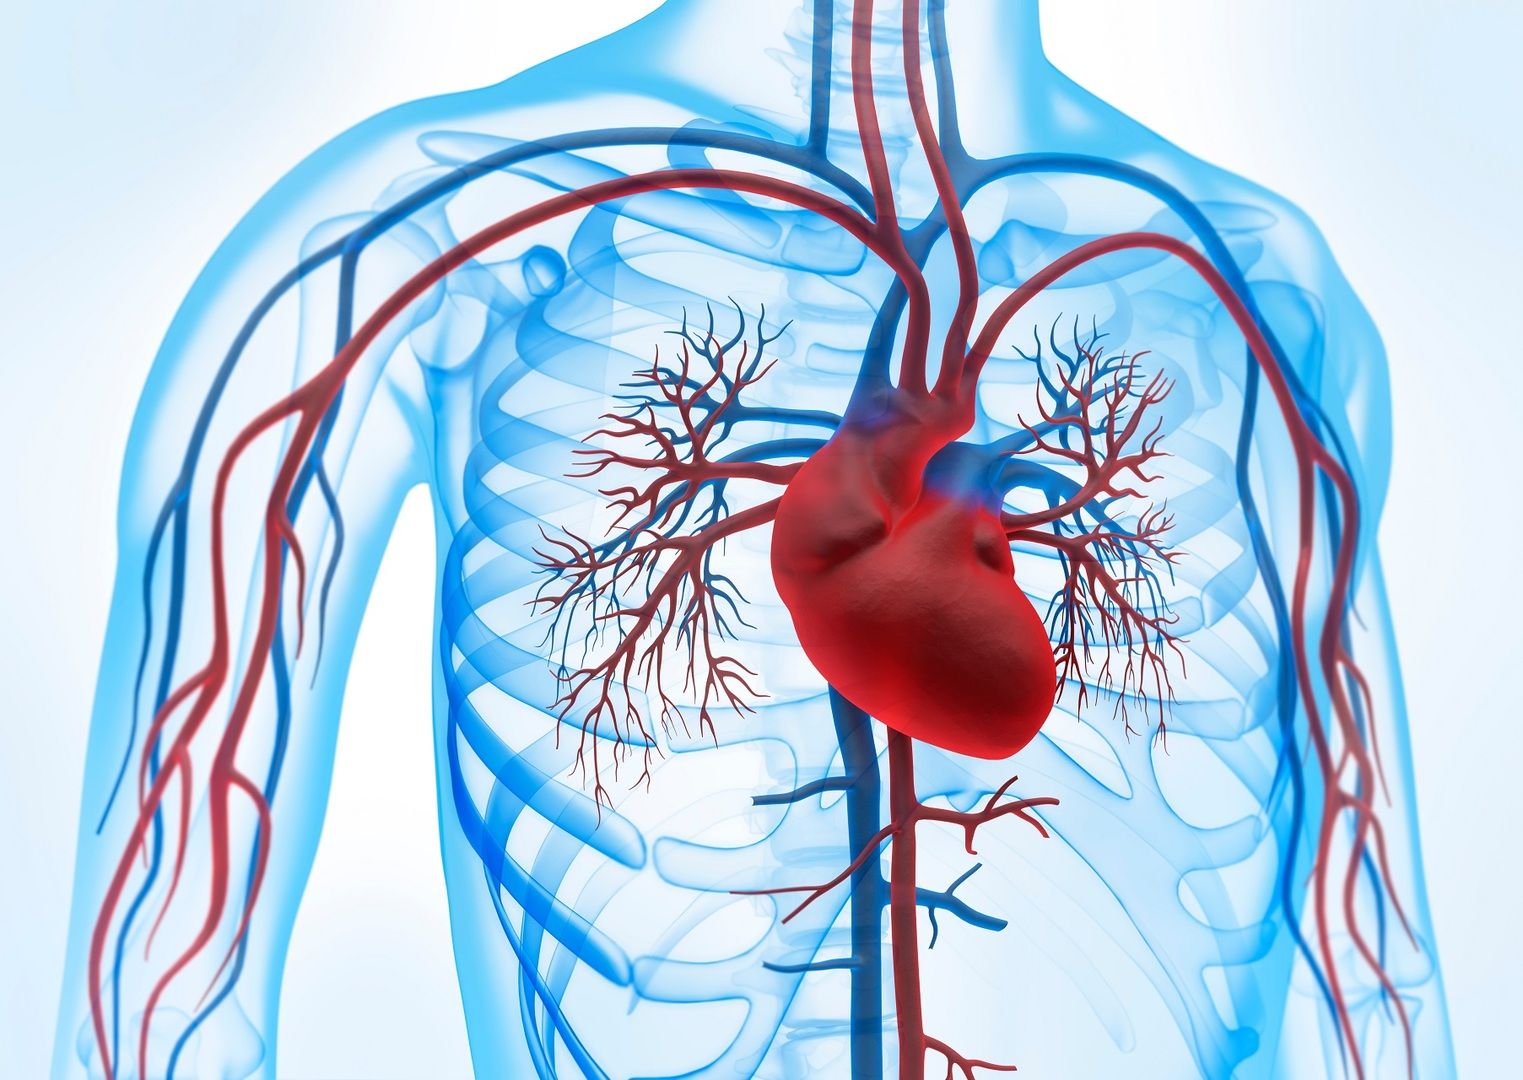 Bloedcirculatie en illustratie van het hart - Ons cardiovasculair systeem is essentieel voor onze gezondheid. Maar hoe kunnen we ziekten voorkomen?